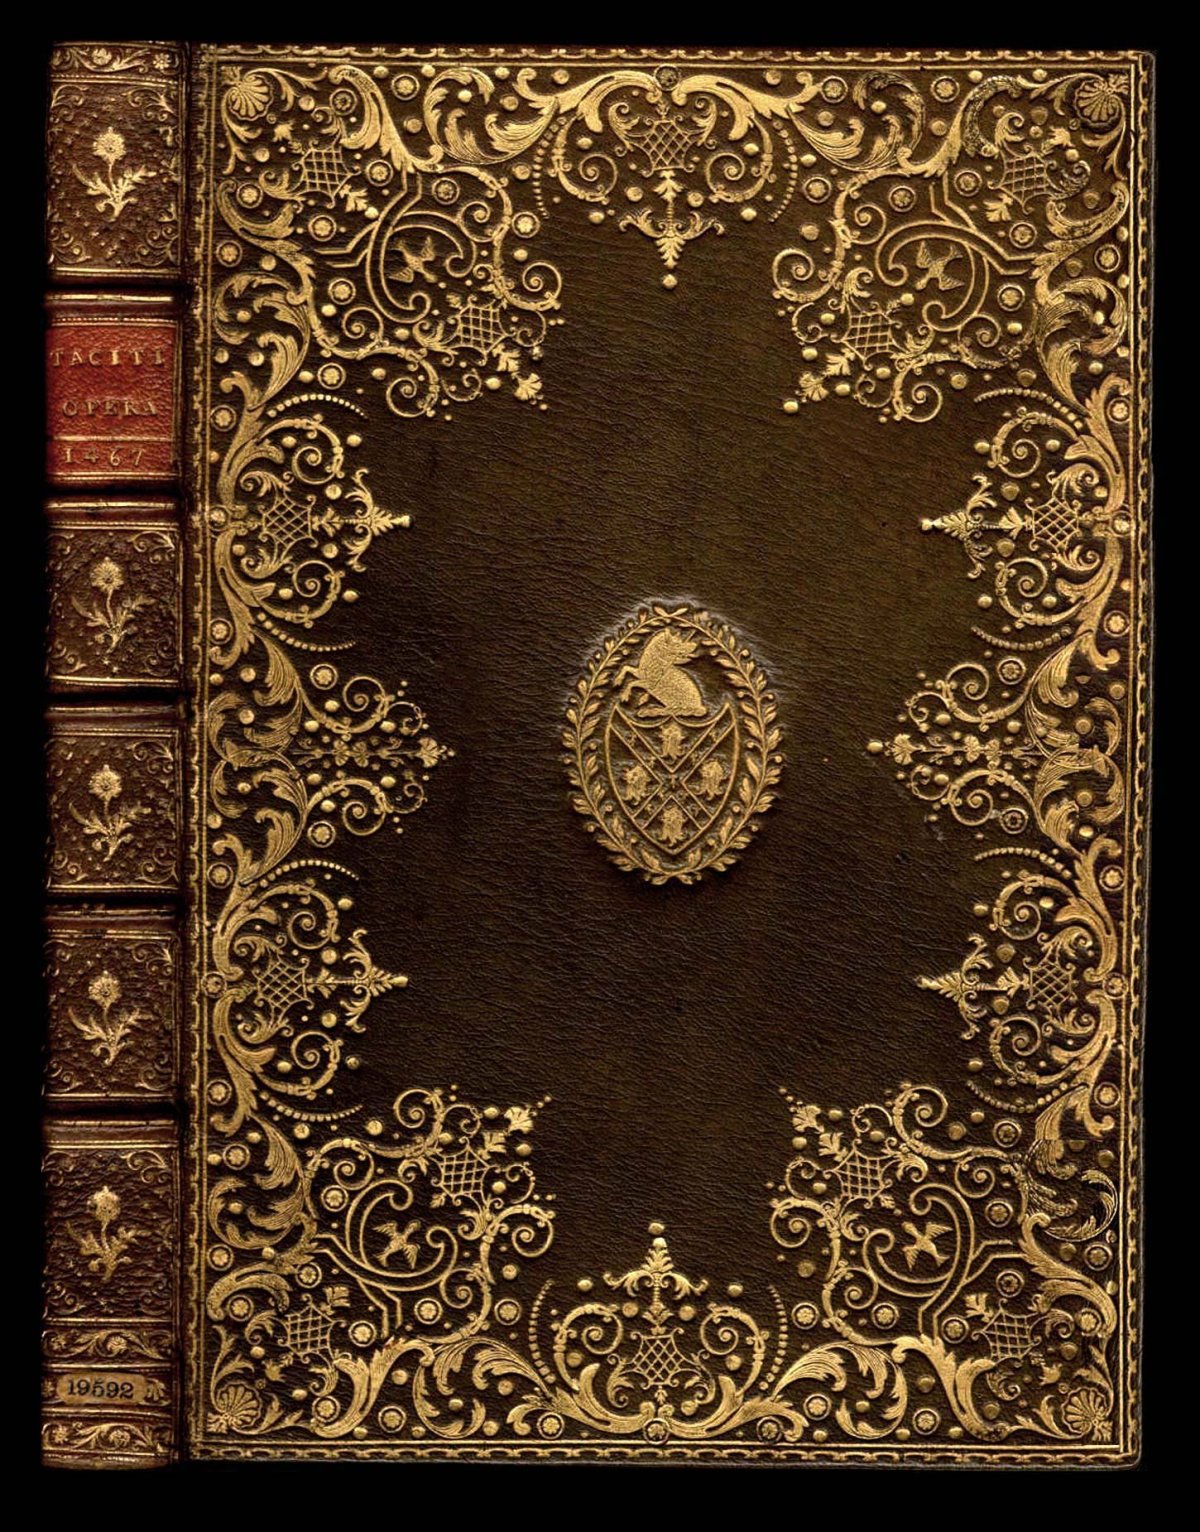 Обложка старинной книги